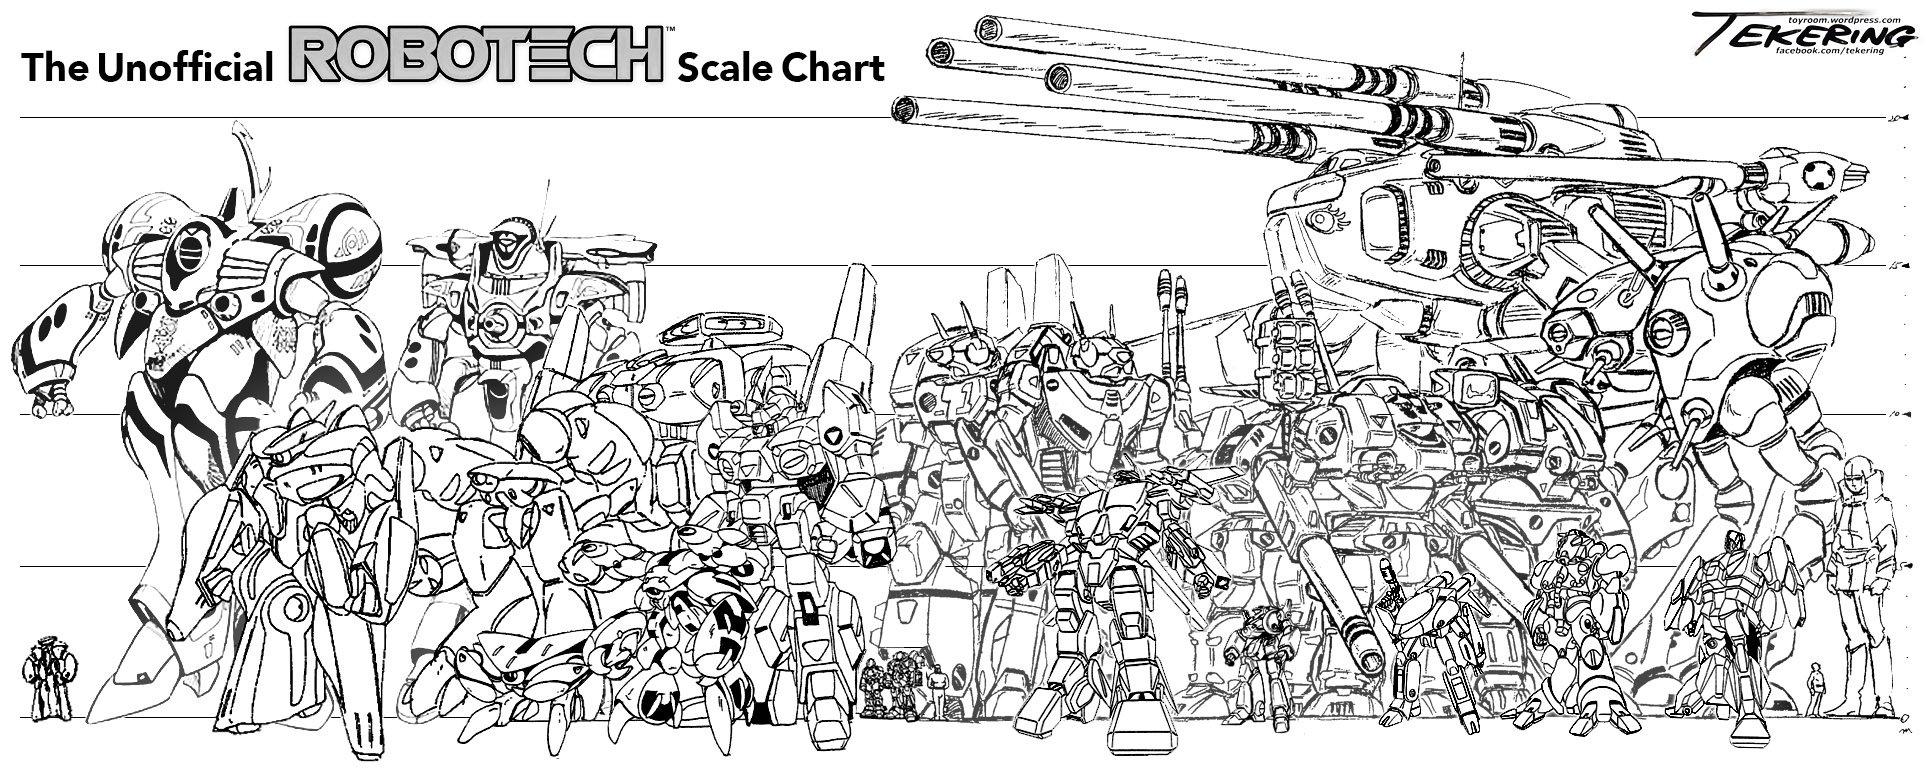 Robotech scale chart 1.2.jpg